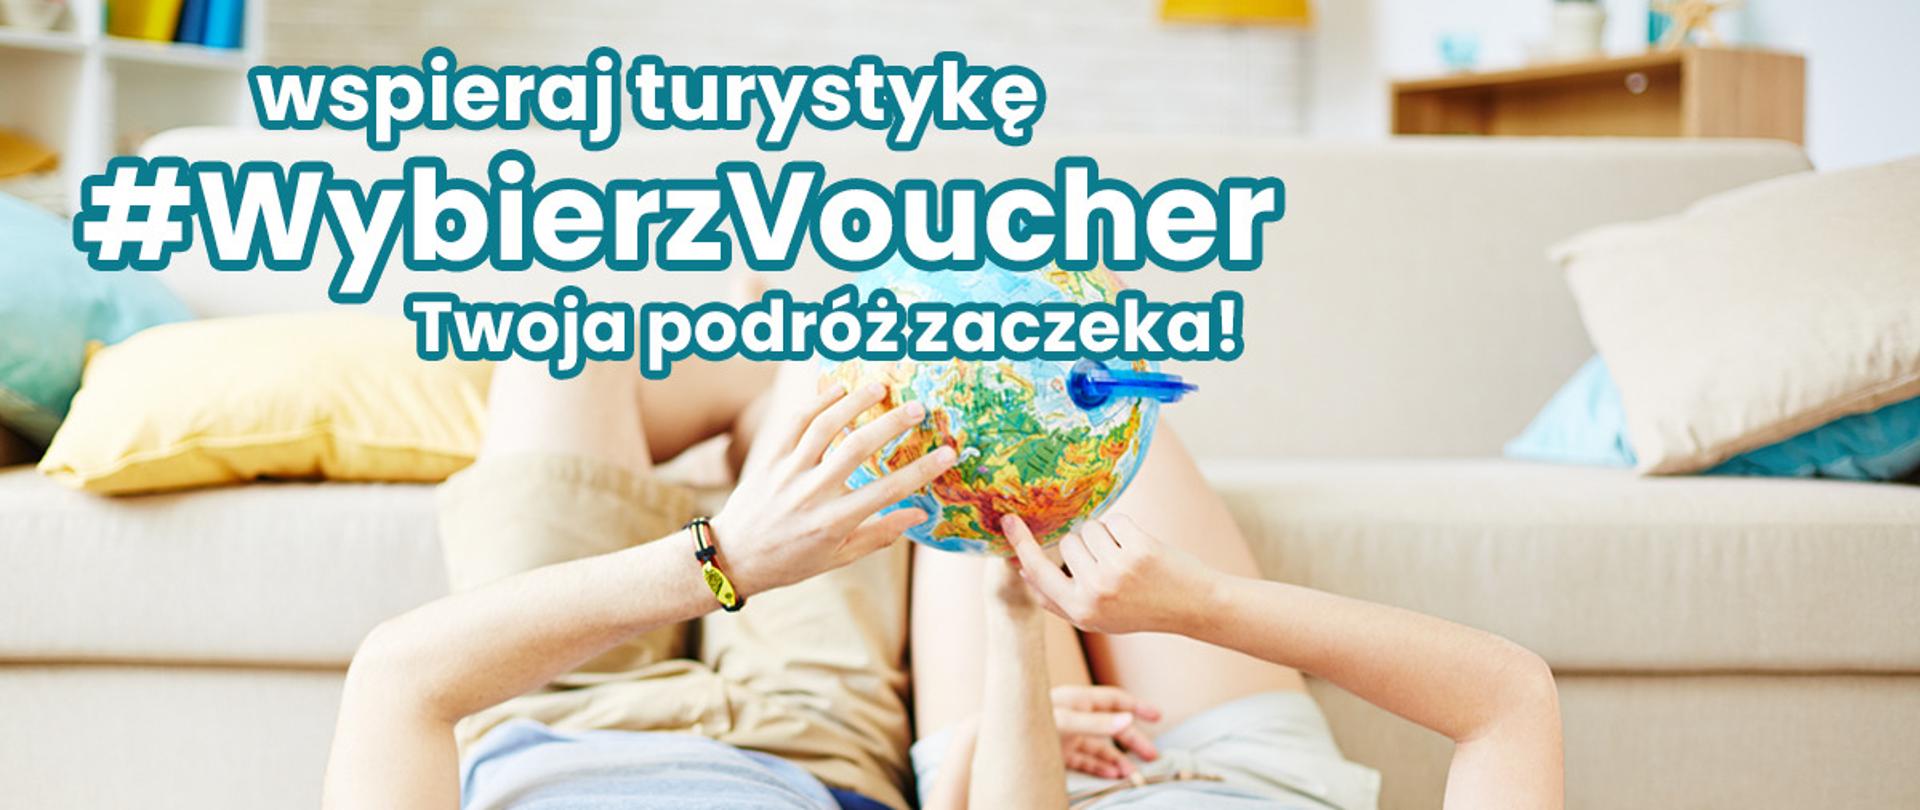 Akcja wspierająca polską turystykę